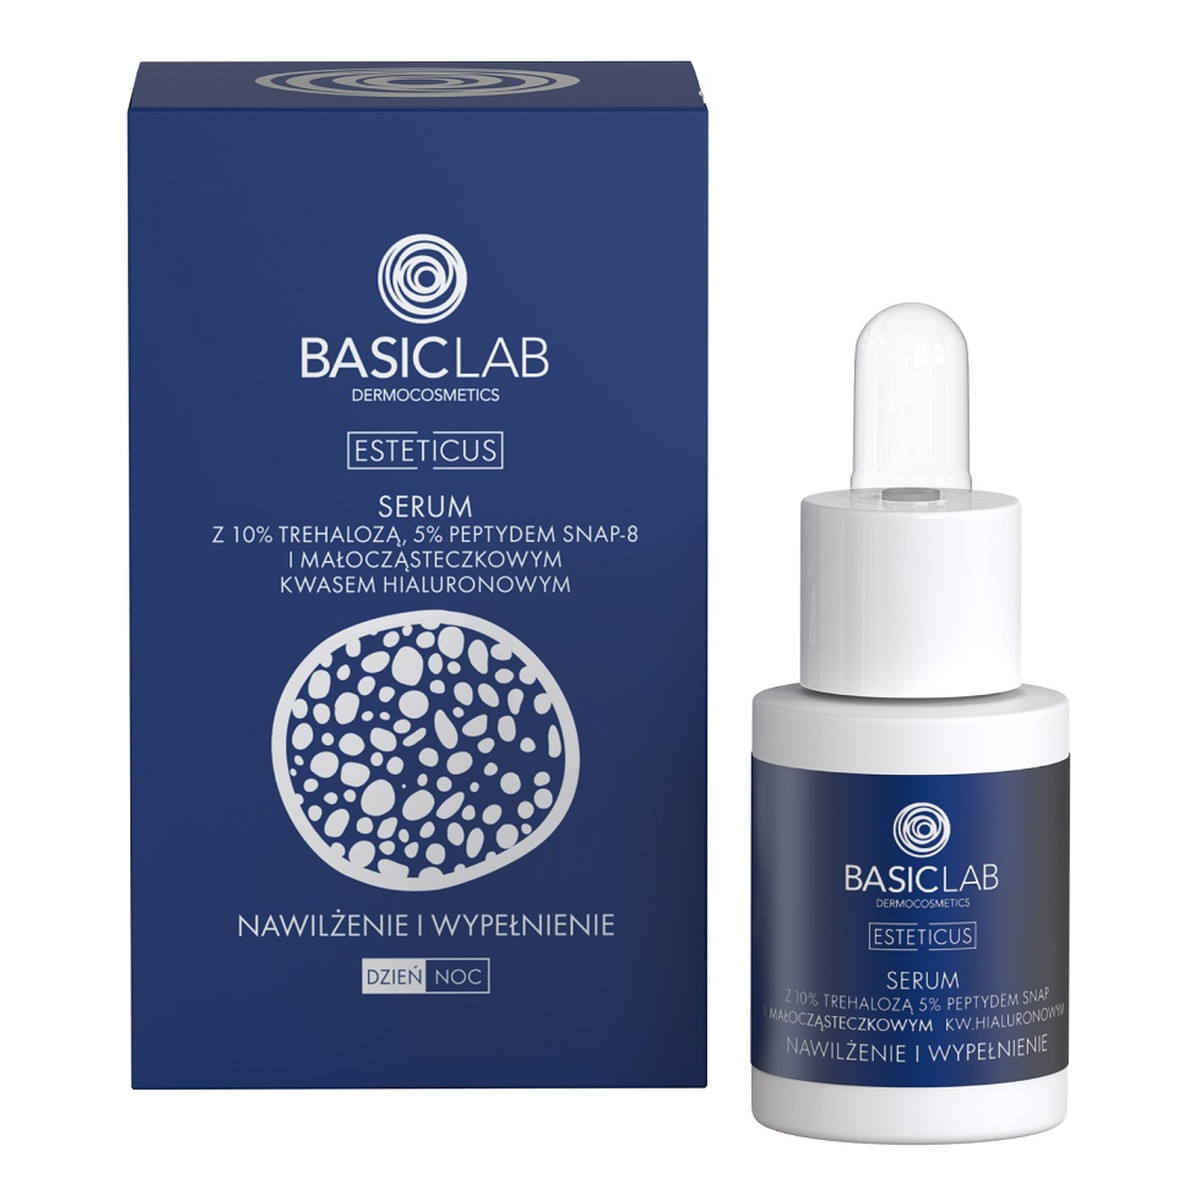 Basiclab Esteticus serum z 10% trehalozą. 5% peptydem snap-8 i małocząsteczkowym kwasem hialuronowym 15ml